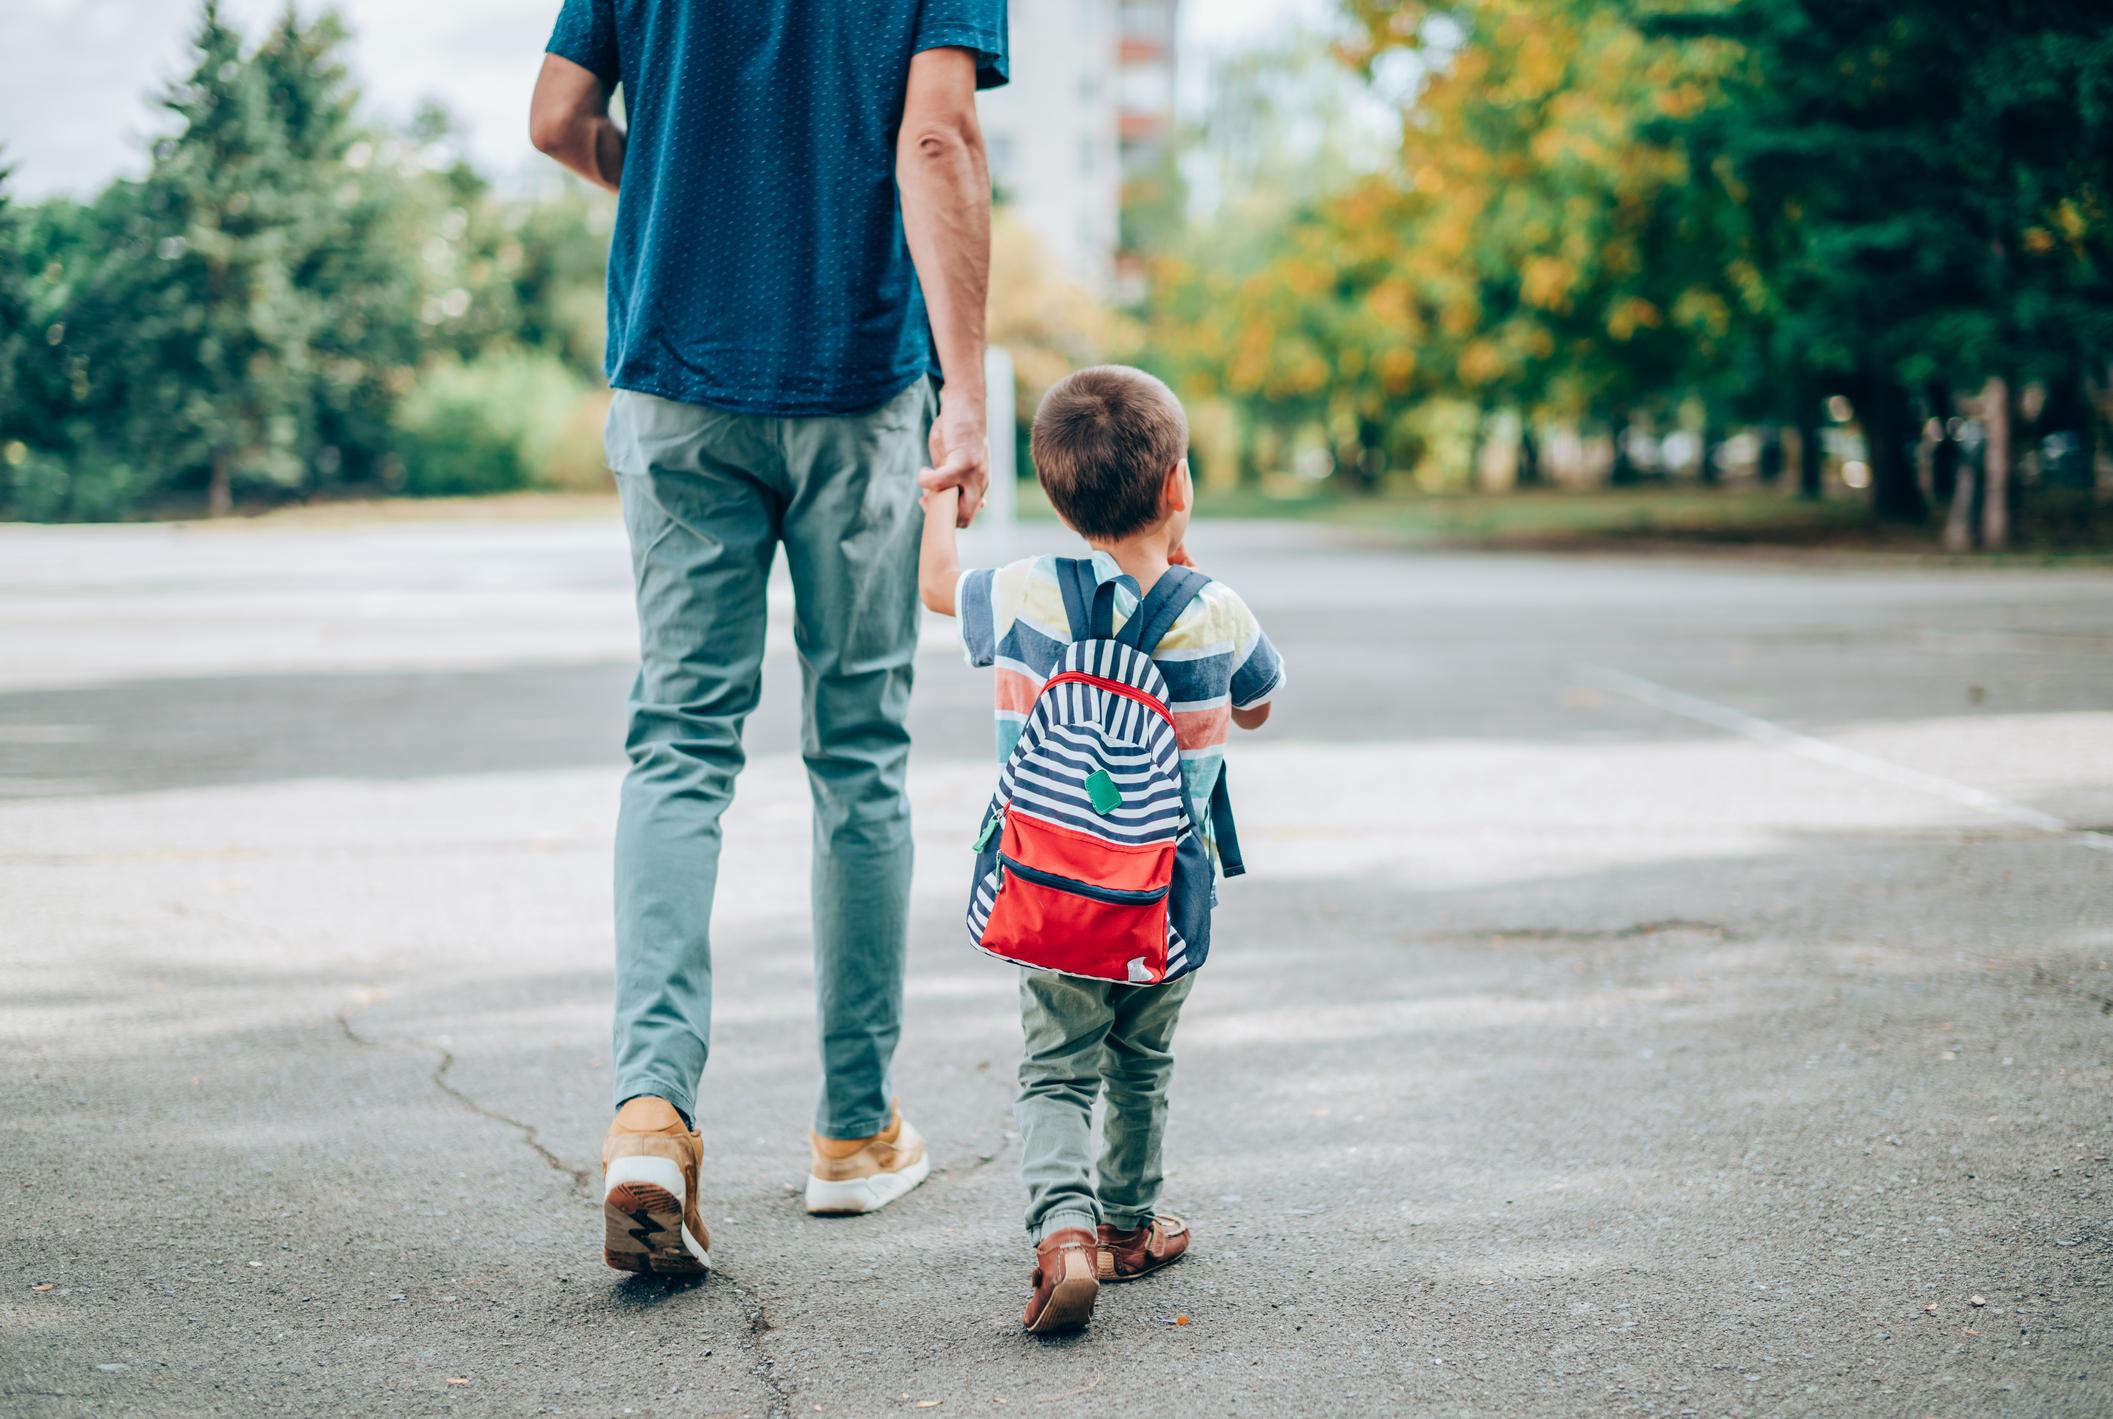 Comment bien préparer son enfant à sa première rentrée à l'école?